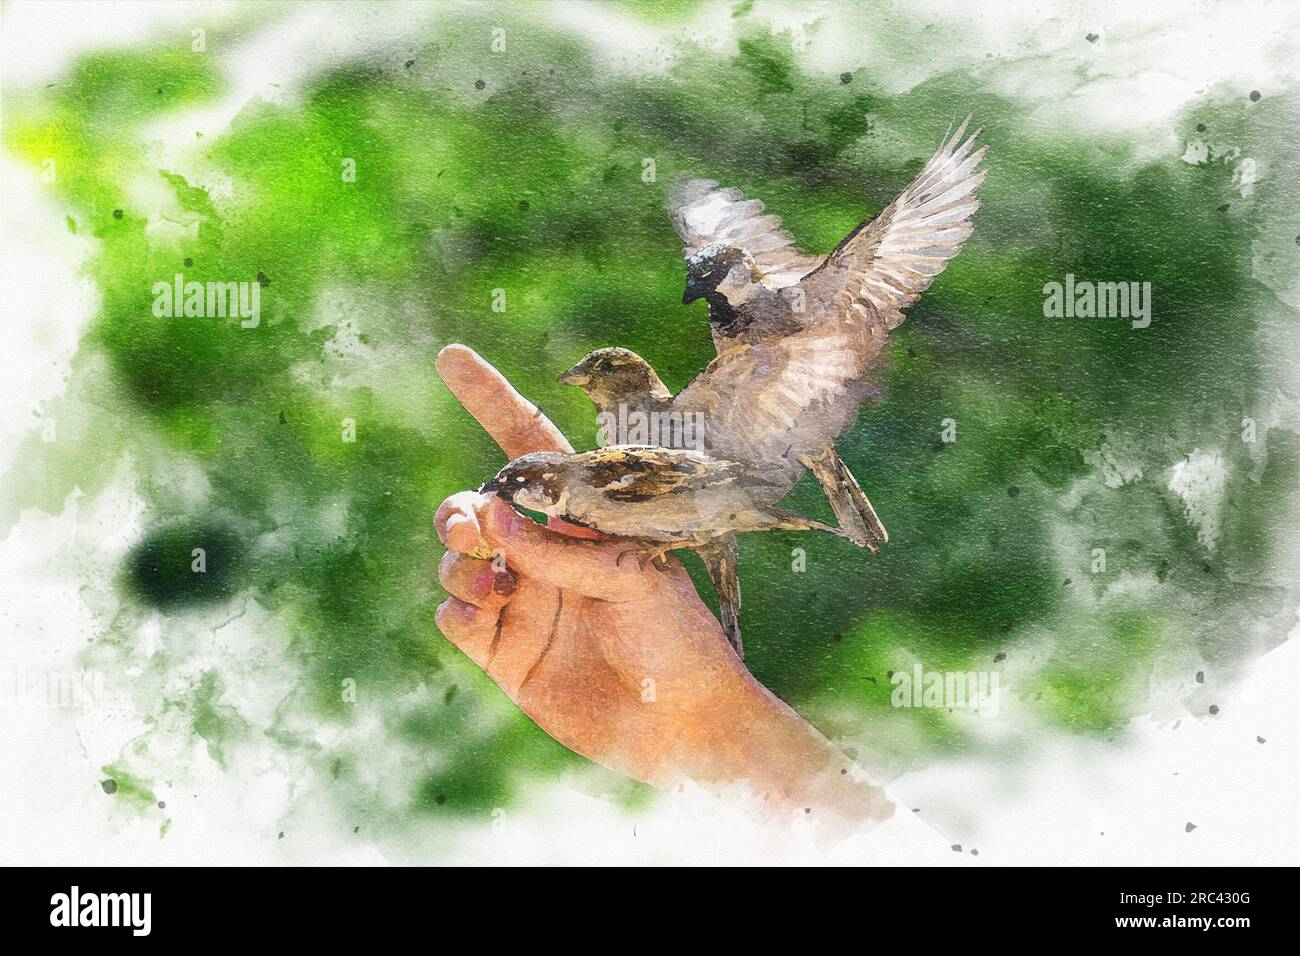 Alimentation des oiseaux. Une peinture numérique de moineaux glisse et s'accroche aux doigts d'un homme pour manger des miettes de pain. Banque D'Images